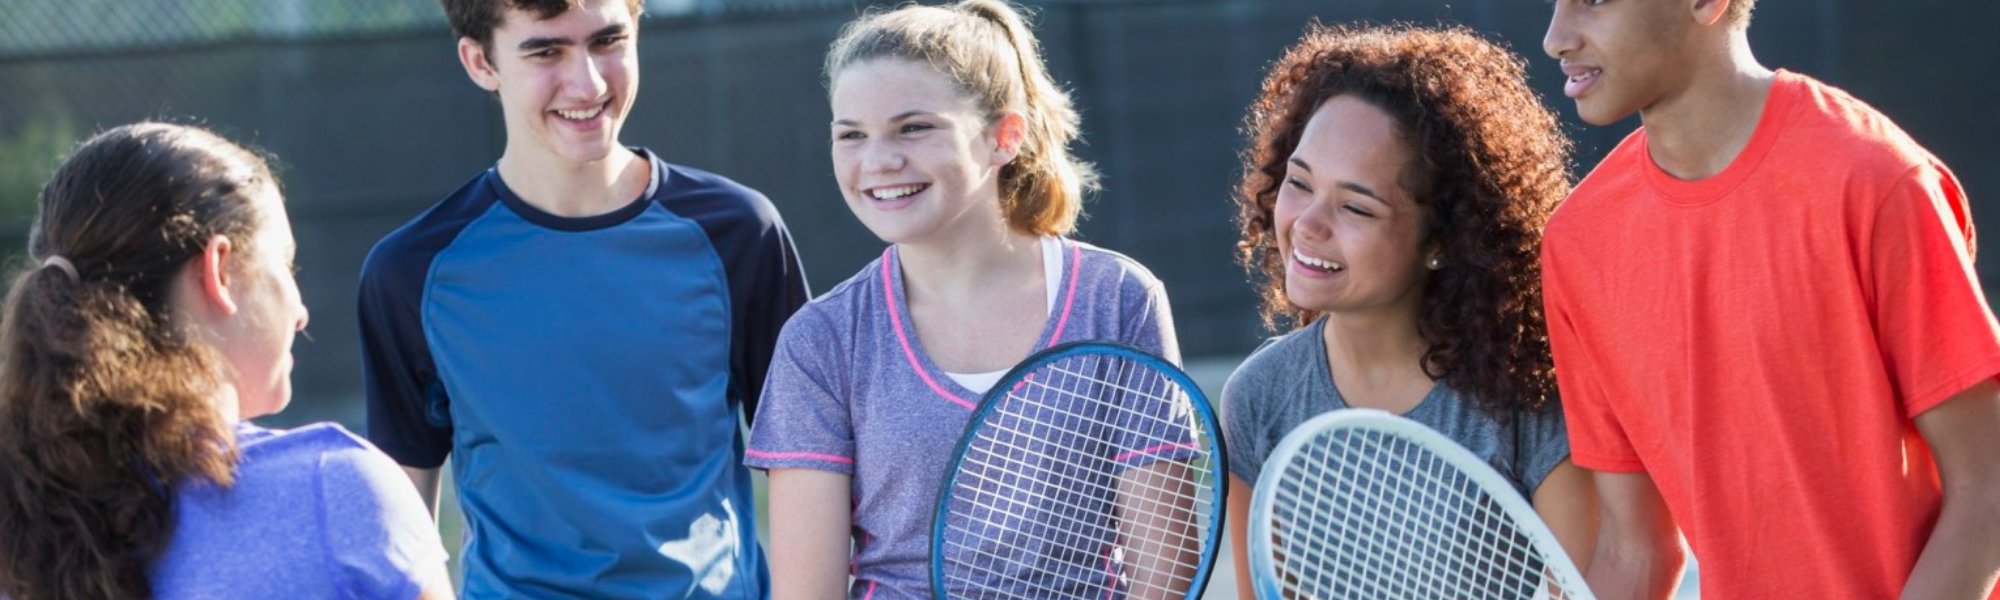 Grand Rapids, Los Angeles, Orlando Bring Tennis to Afterschool ...